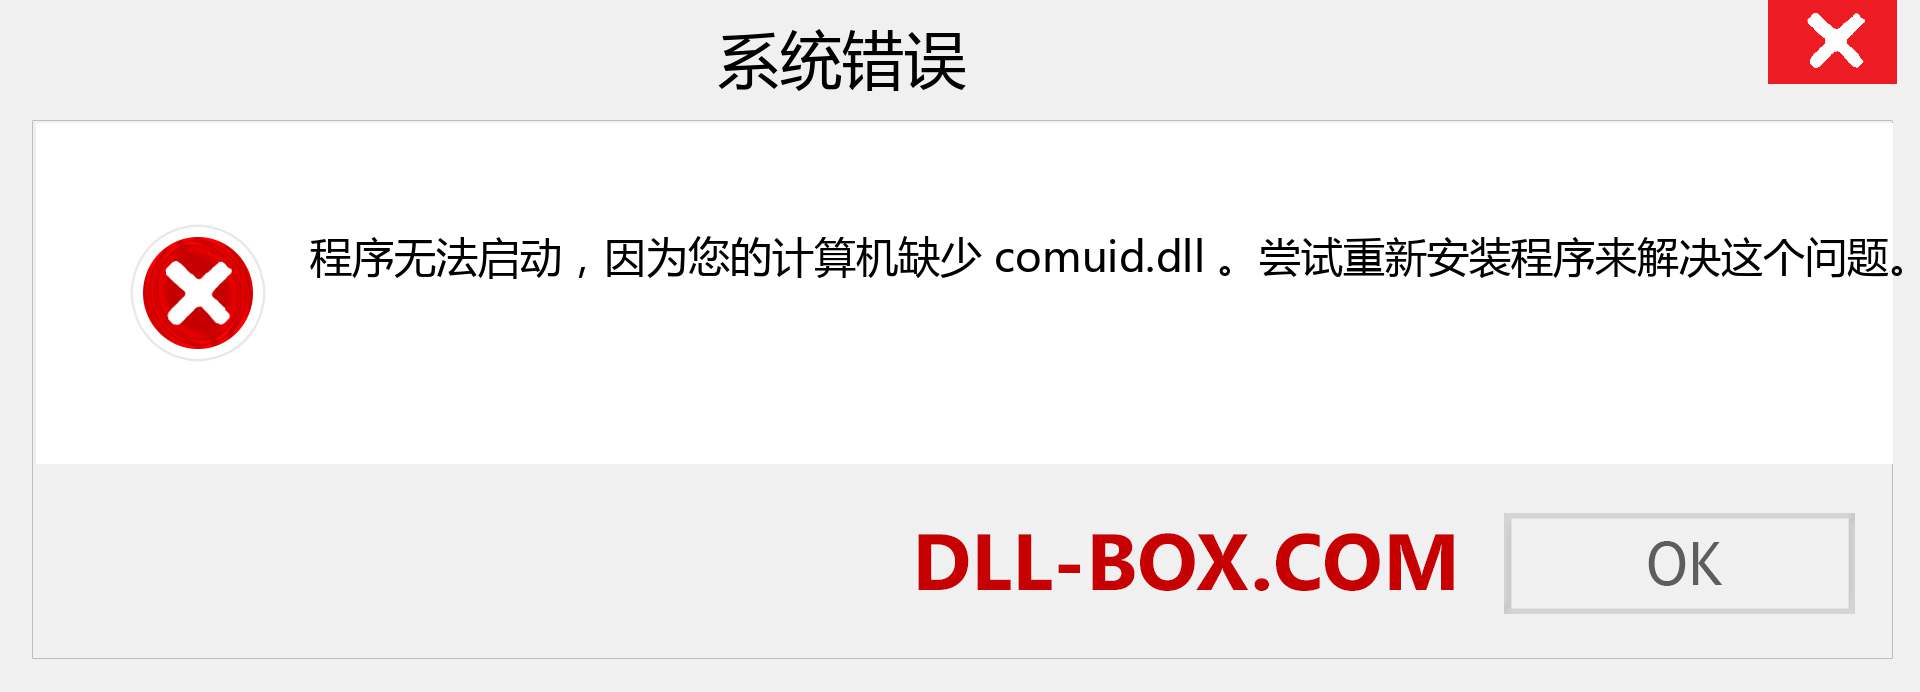 comuid.dll 文件丢失？。 适用于 Windows 7、8、10 的下载 - 修复 Windows、照片、图像上的 comuid dll 丢失错误